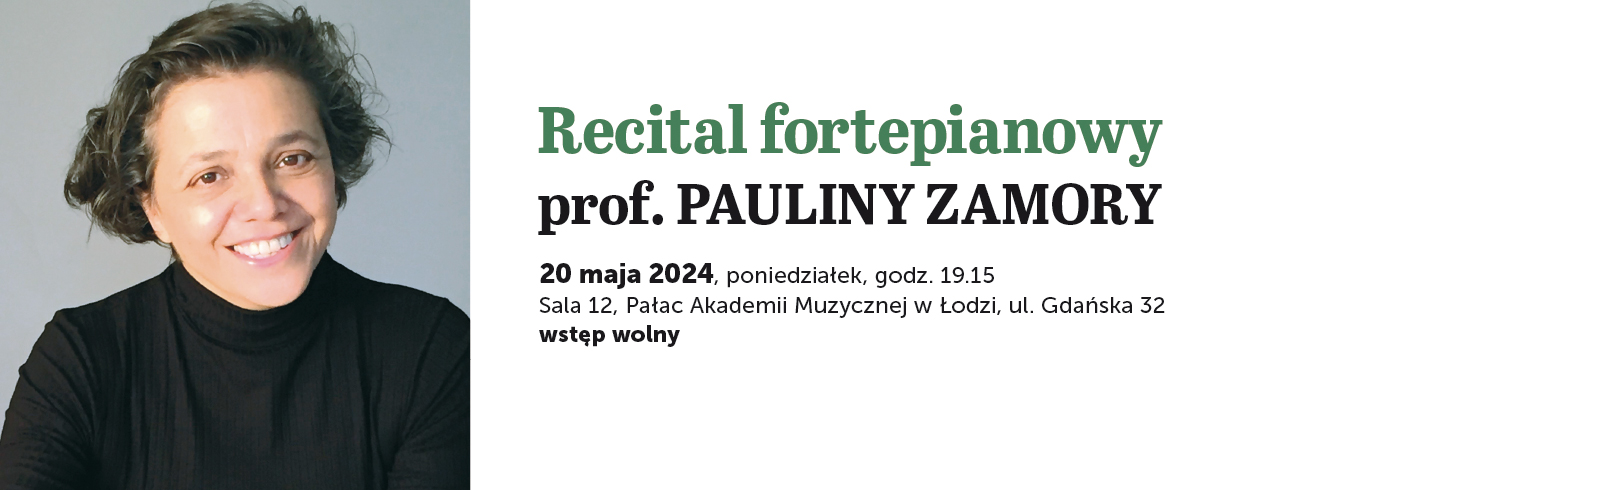 Recital fortepianowy prof. PAULINY ZAMORY 2024-05-20